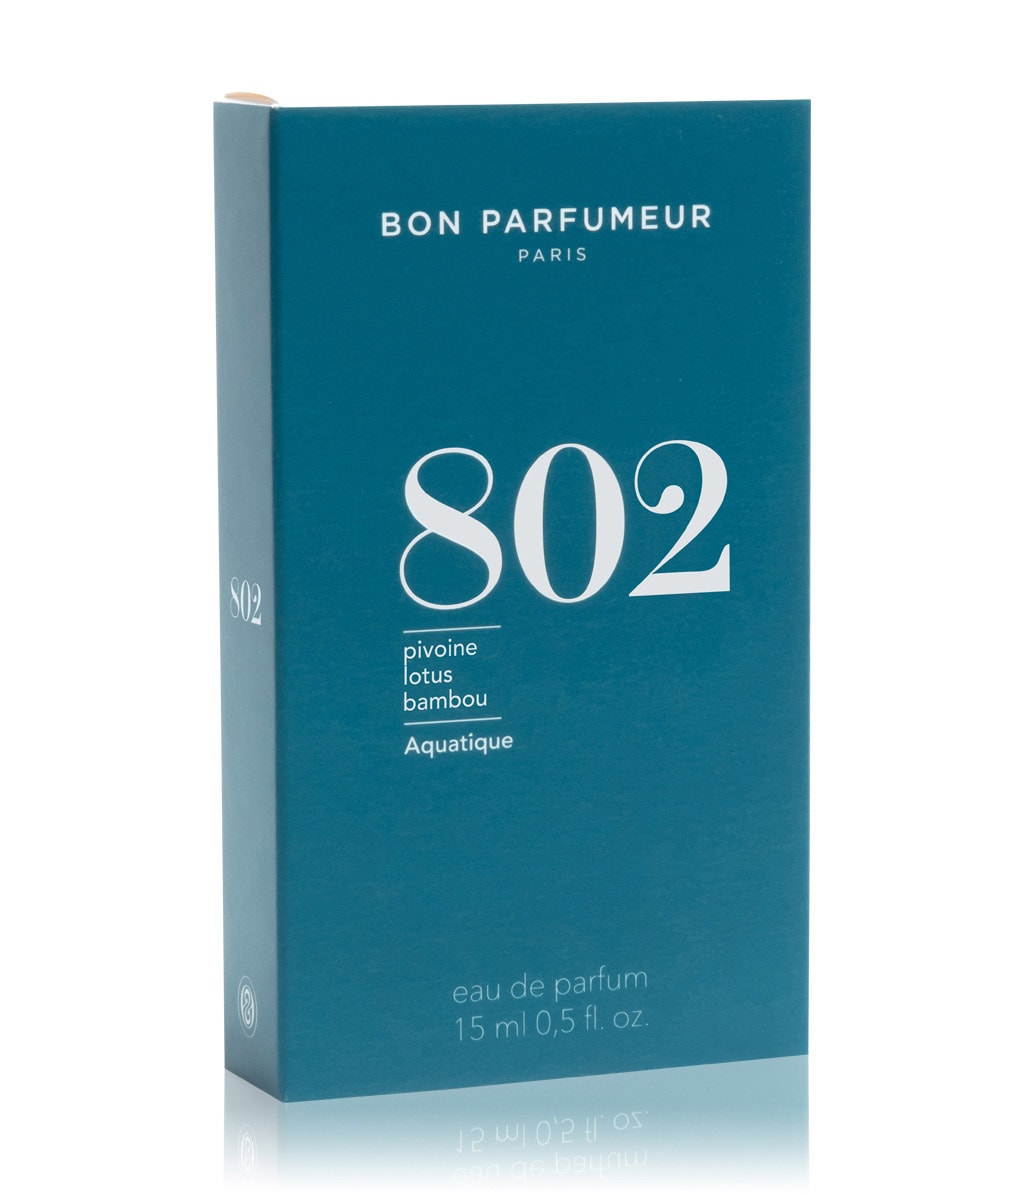 Bon Parfumeur 802 Pivoine-Lotus-Bambou Eau de Parfum bestellen | flaconi